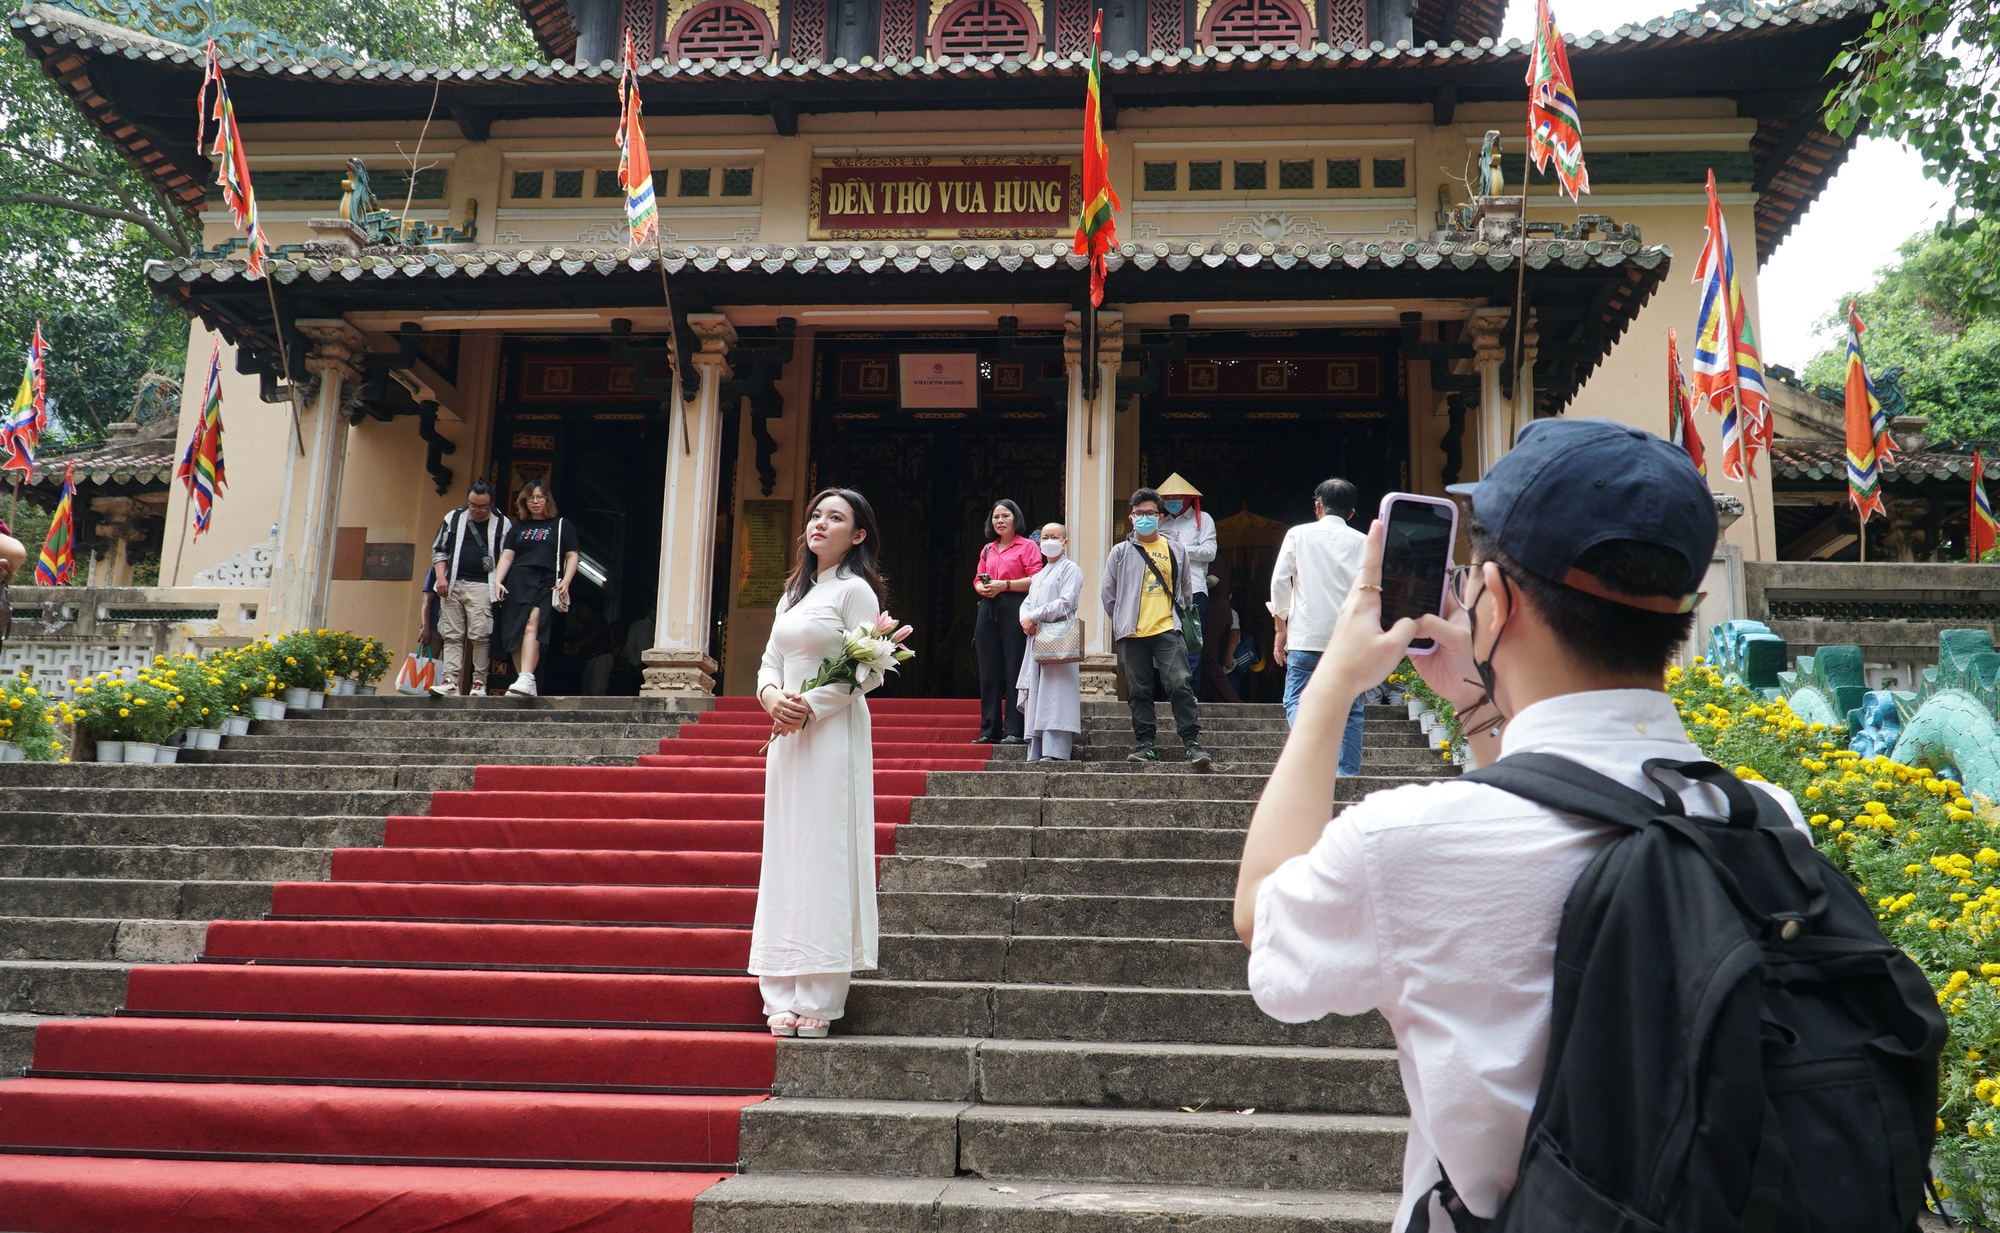 Lễ Giỗ tổ, người trẻ đến đền thờ vua Hùng để hướng về nguồn cội - Ảnh 3.